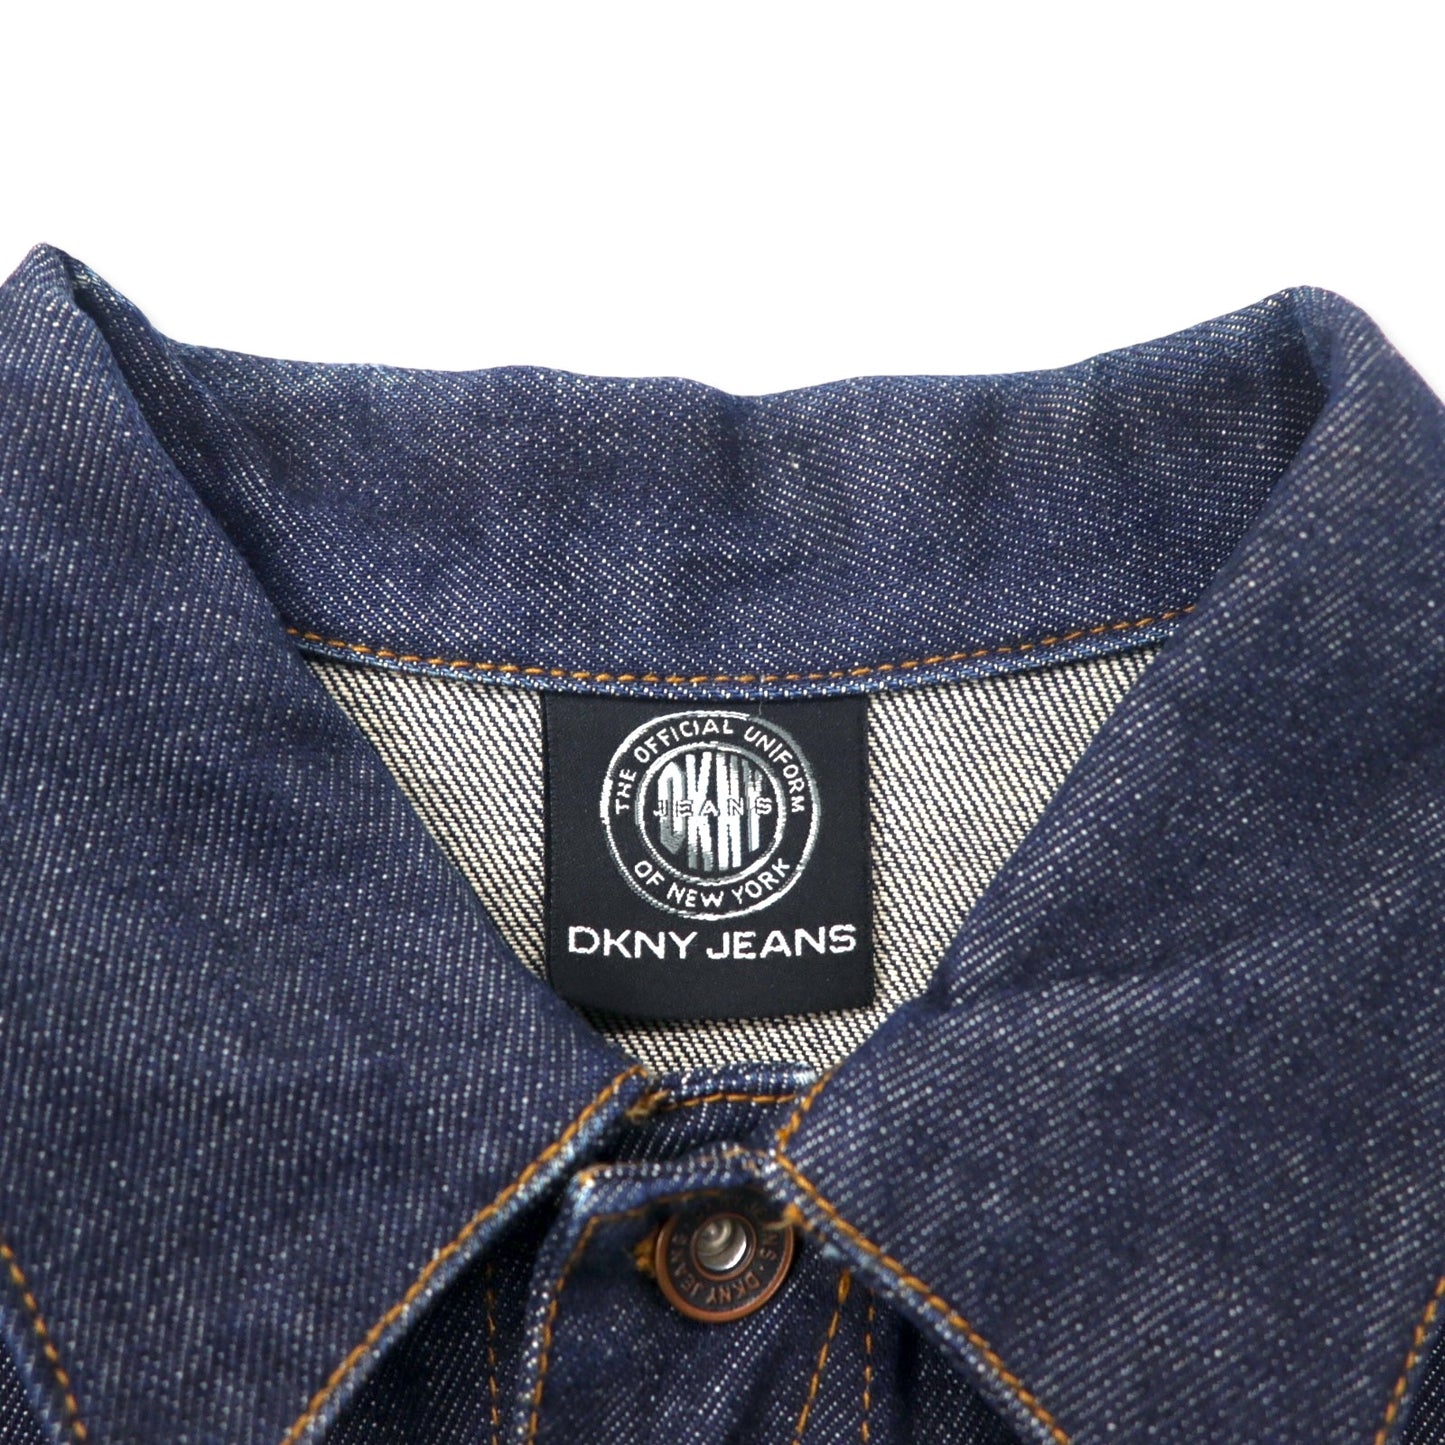 DKNY JEANS 90年代 リジッド デニムジャケット Gジャン S ブルー 濃紺